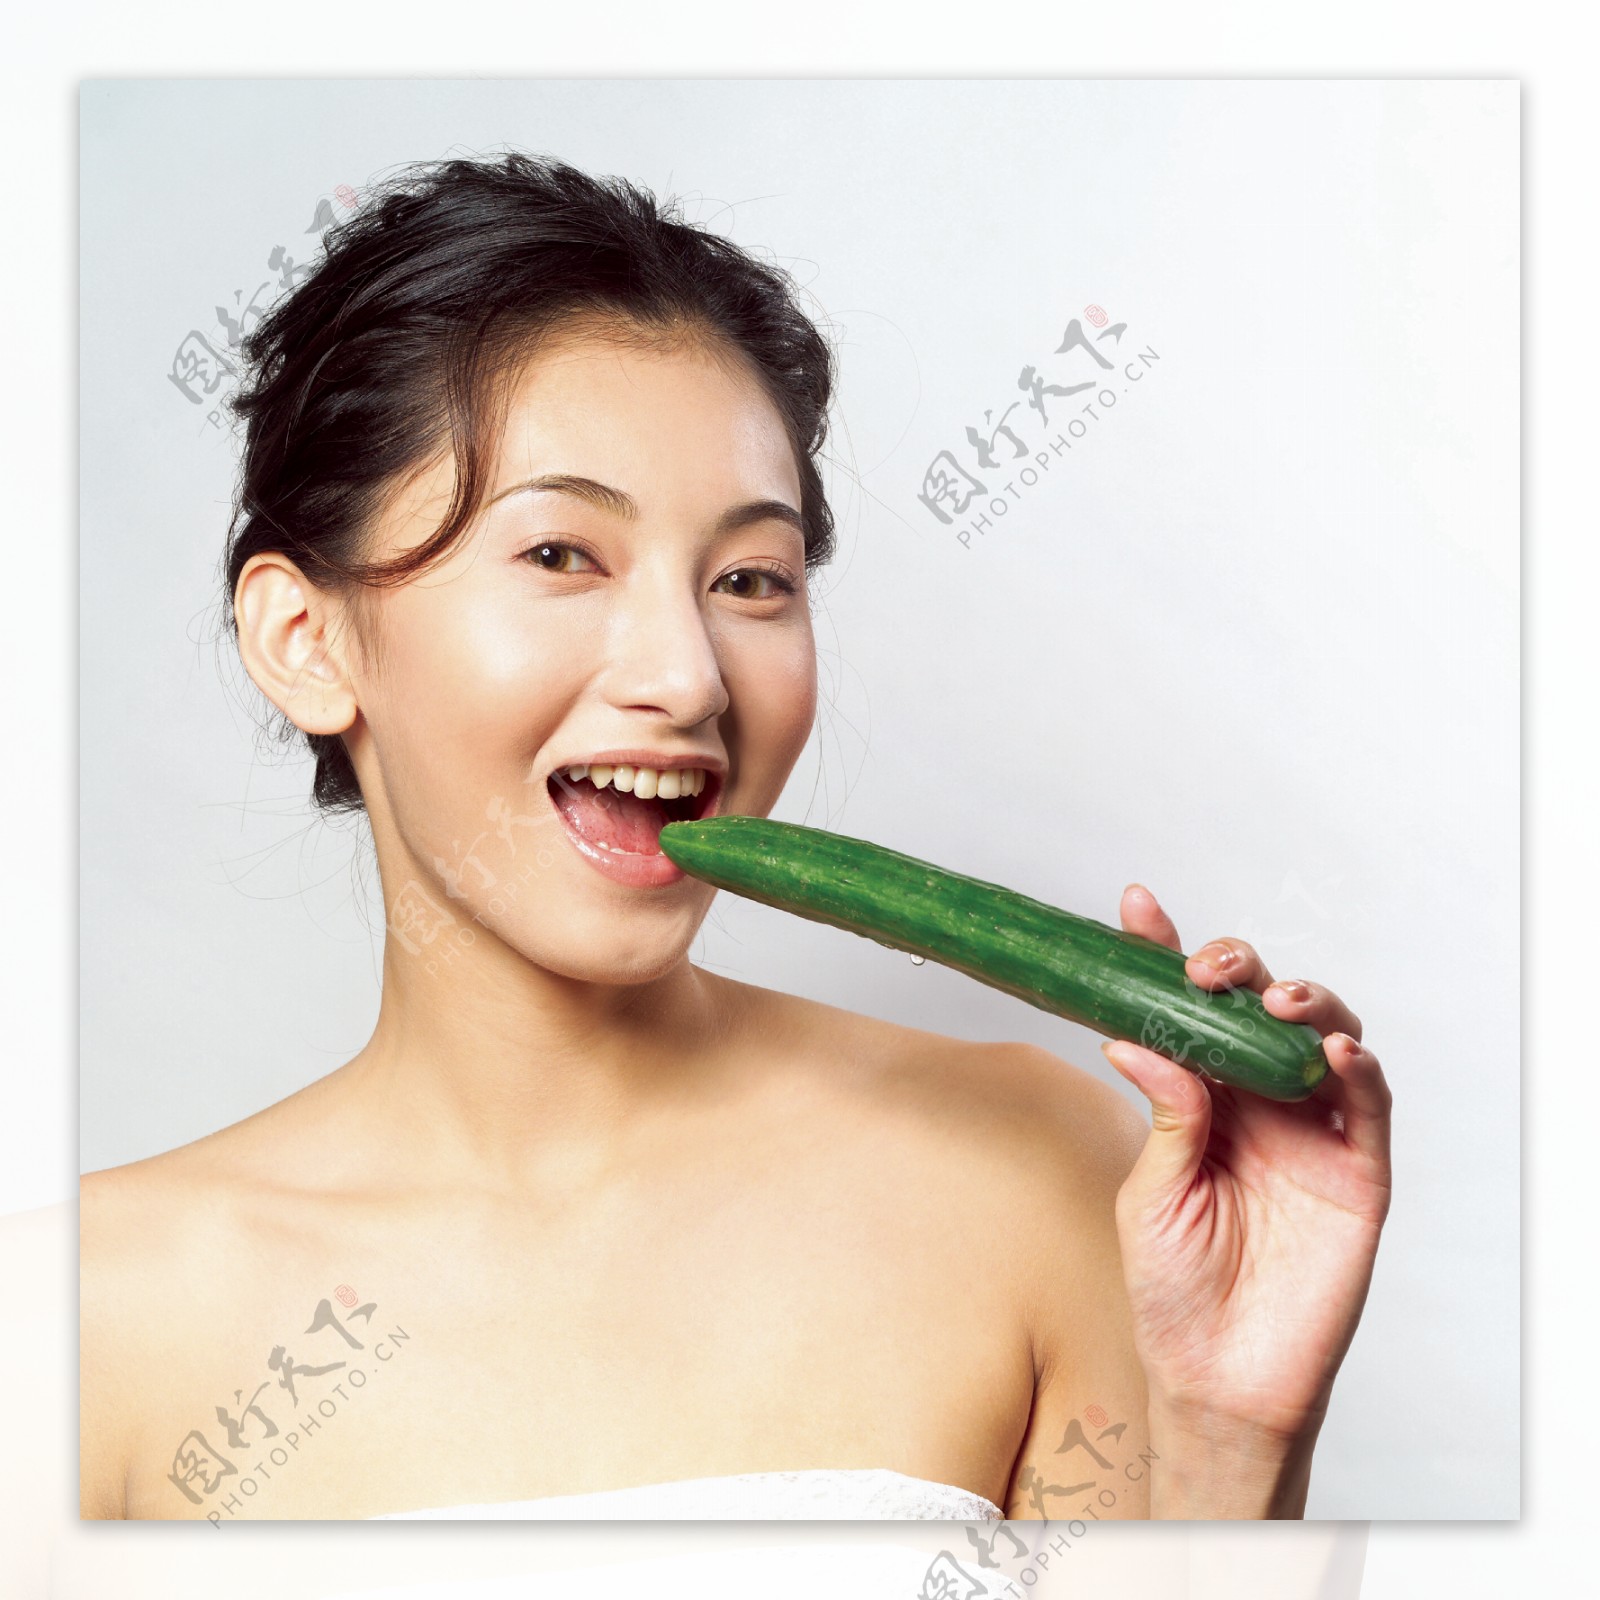 吃青瓜的美女图片